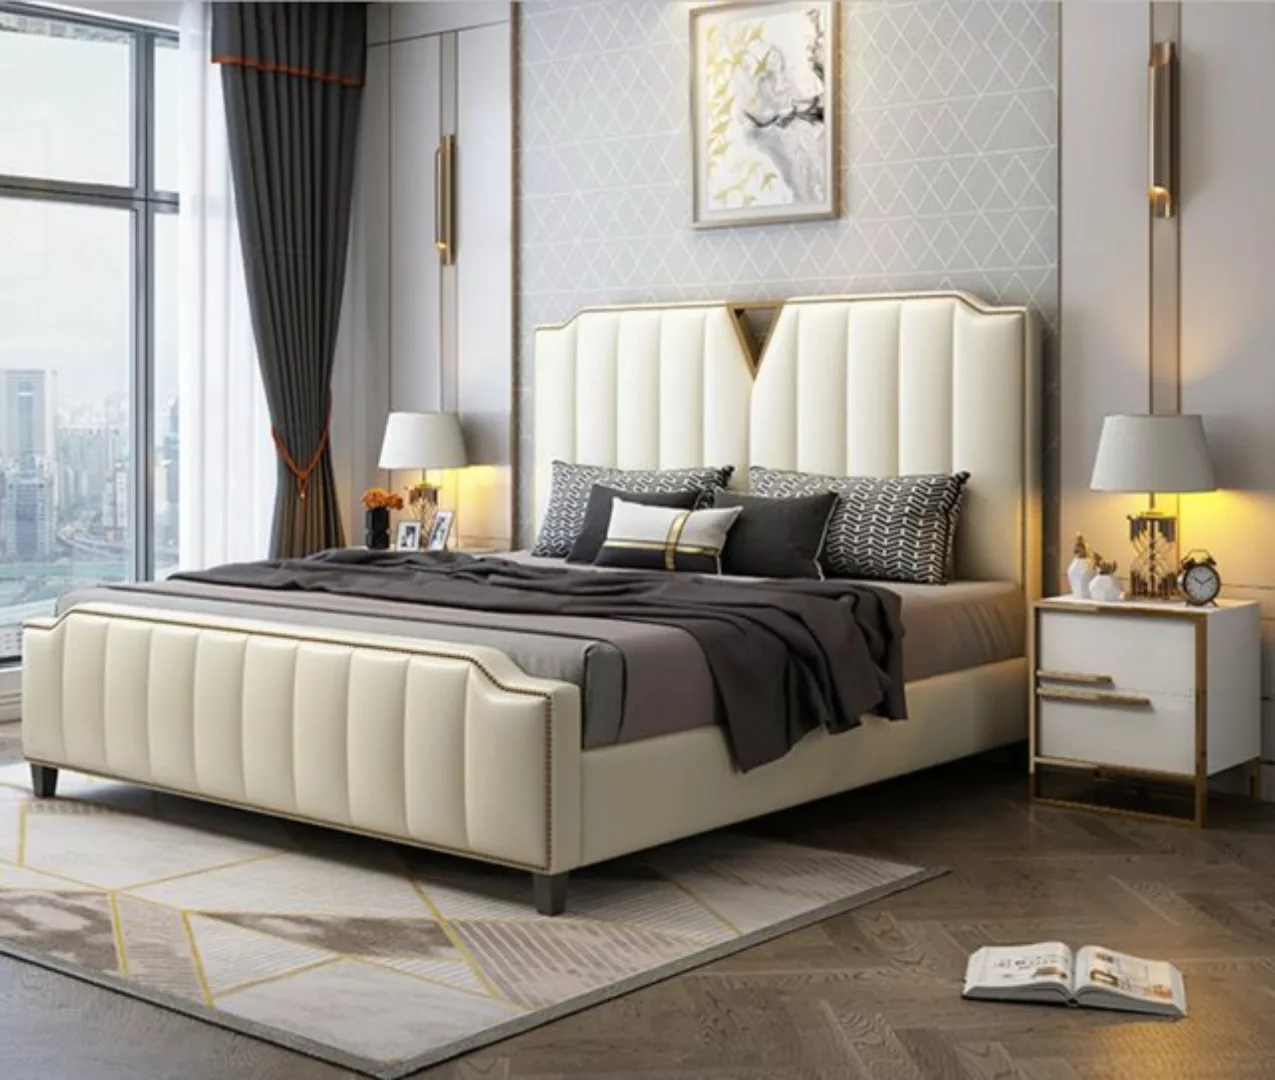 JVmoebel Bett Beige Doppelbett Schlafzimmer Betten Luxus Einrichtung Möbel günstig online kaufen